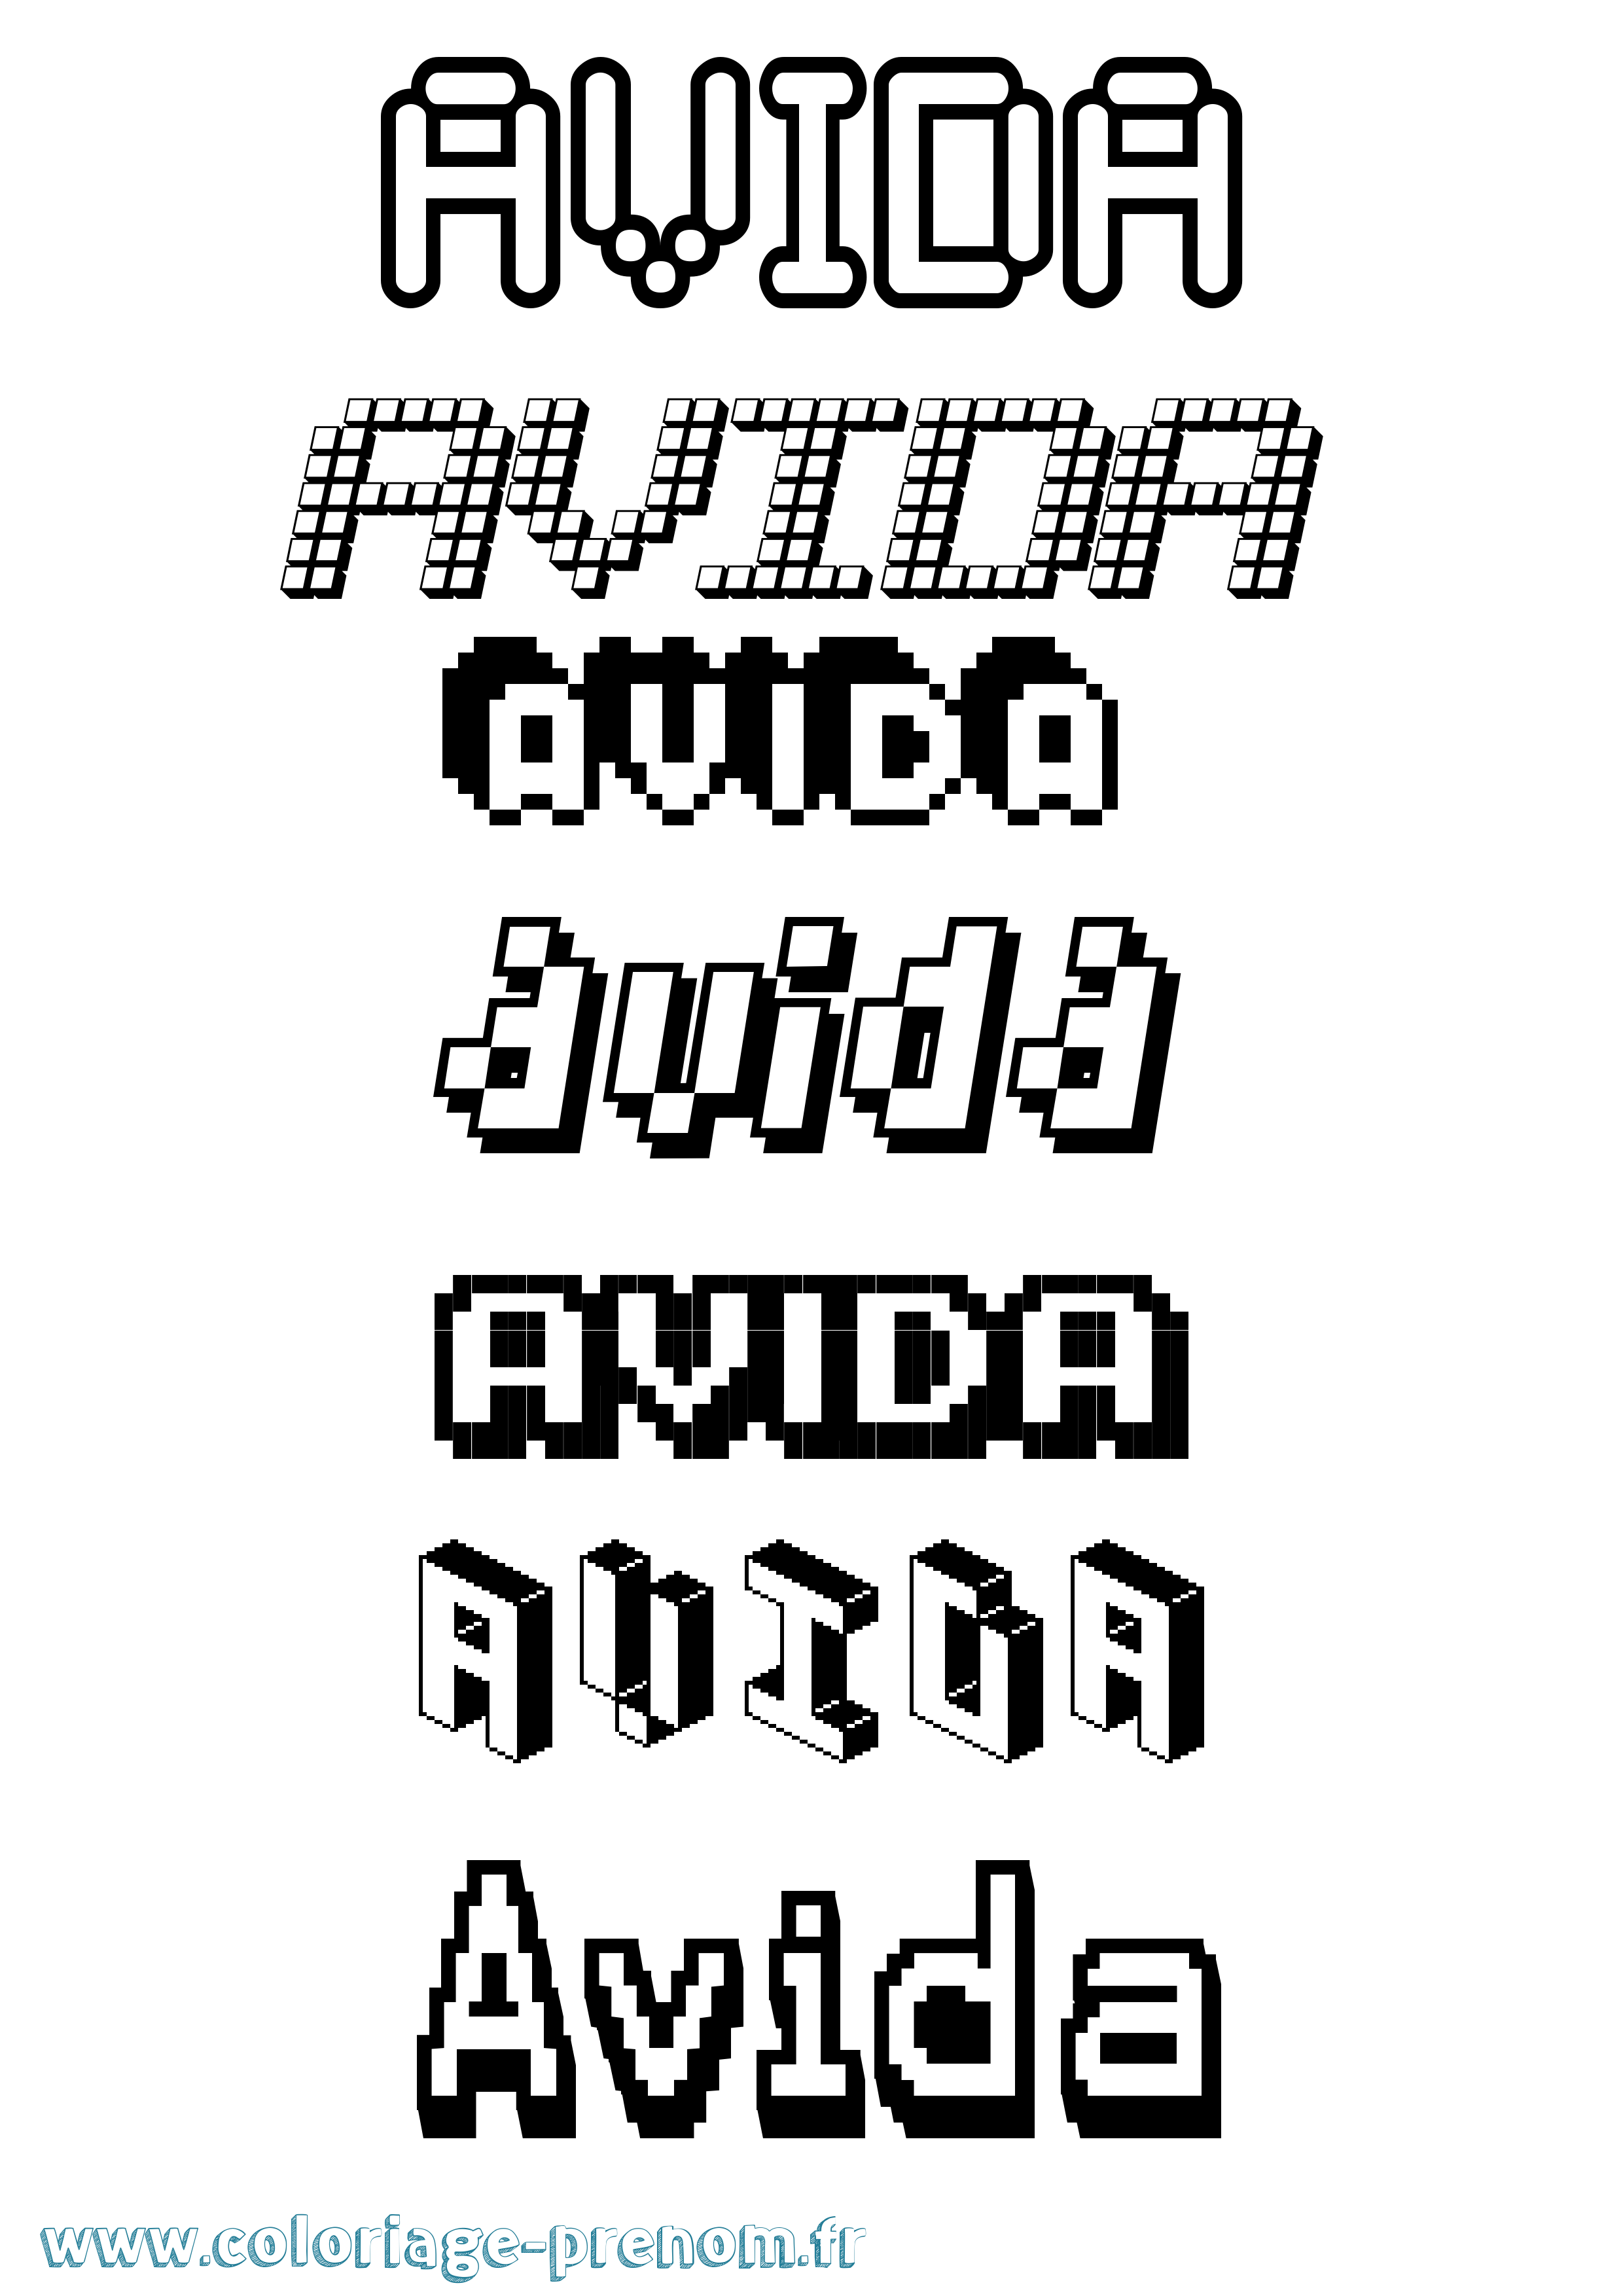 Coloriage prénom Avida Pixel